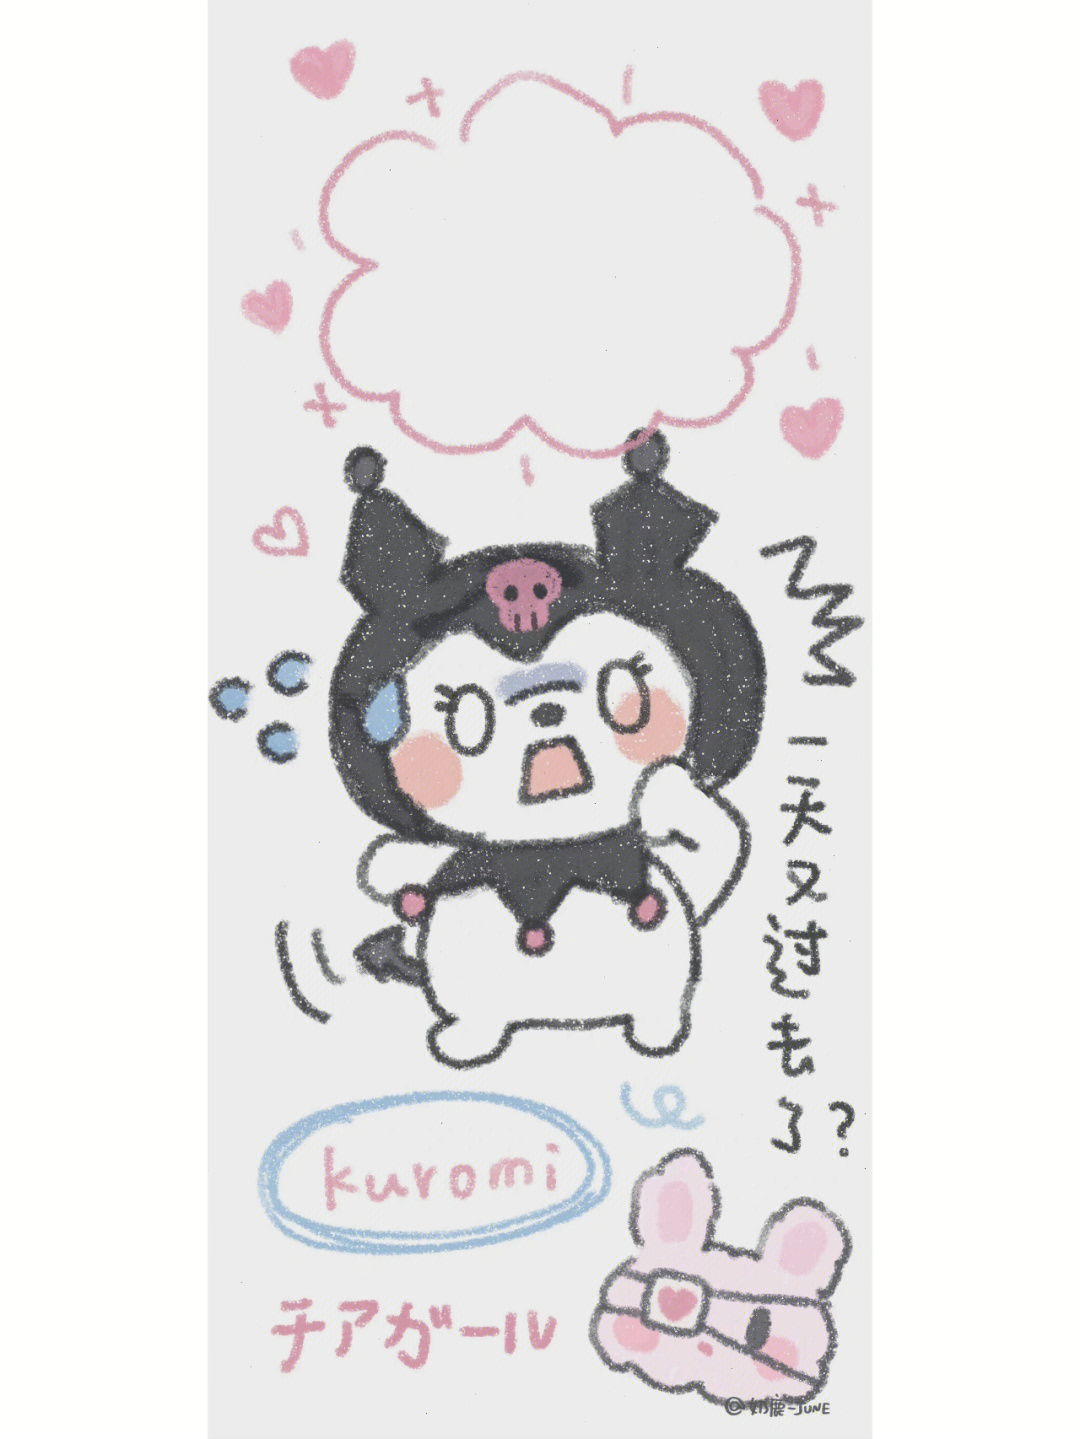 奶fufu的壁纸图片